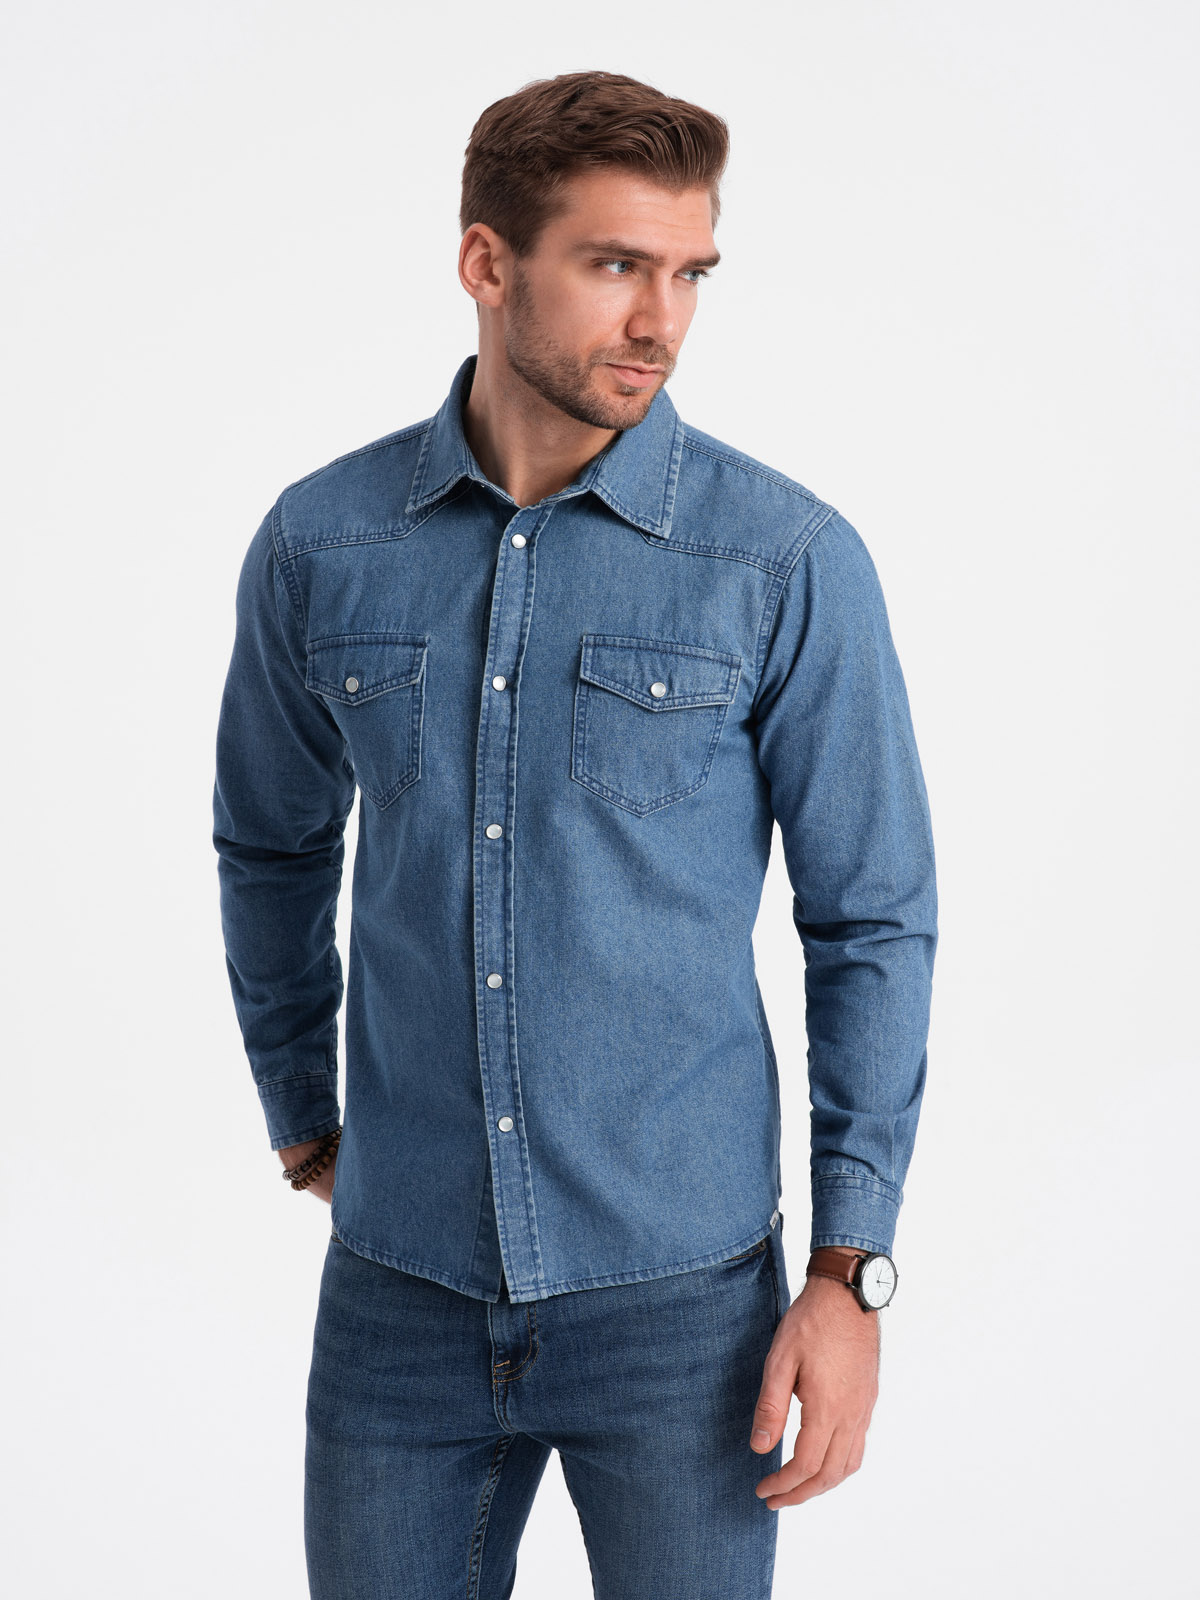 Koszula męska jeansowa na zatrzaski z kieszonkami - niebieska V2 OM-SHDS-0115